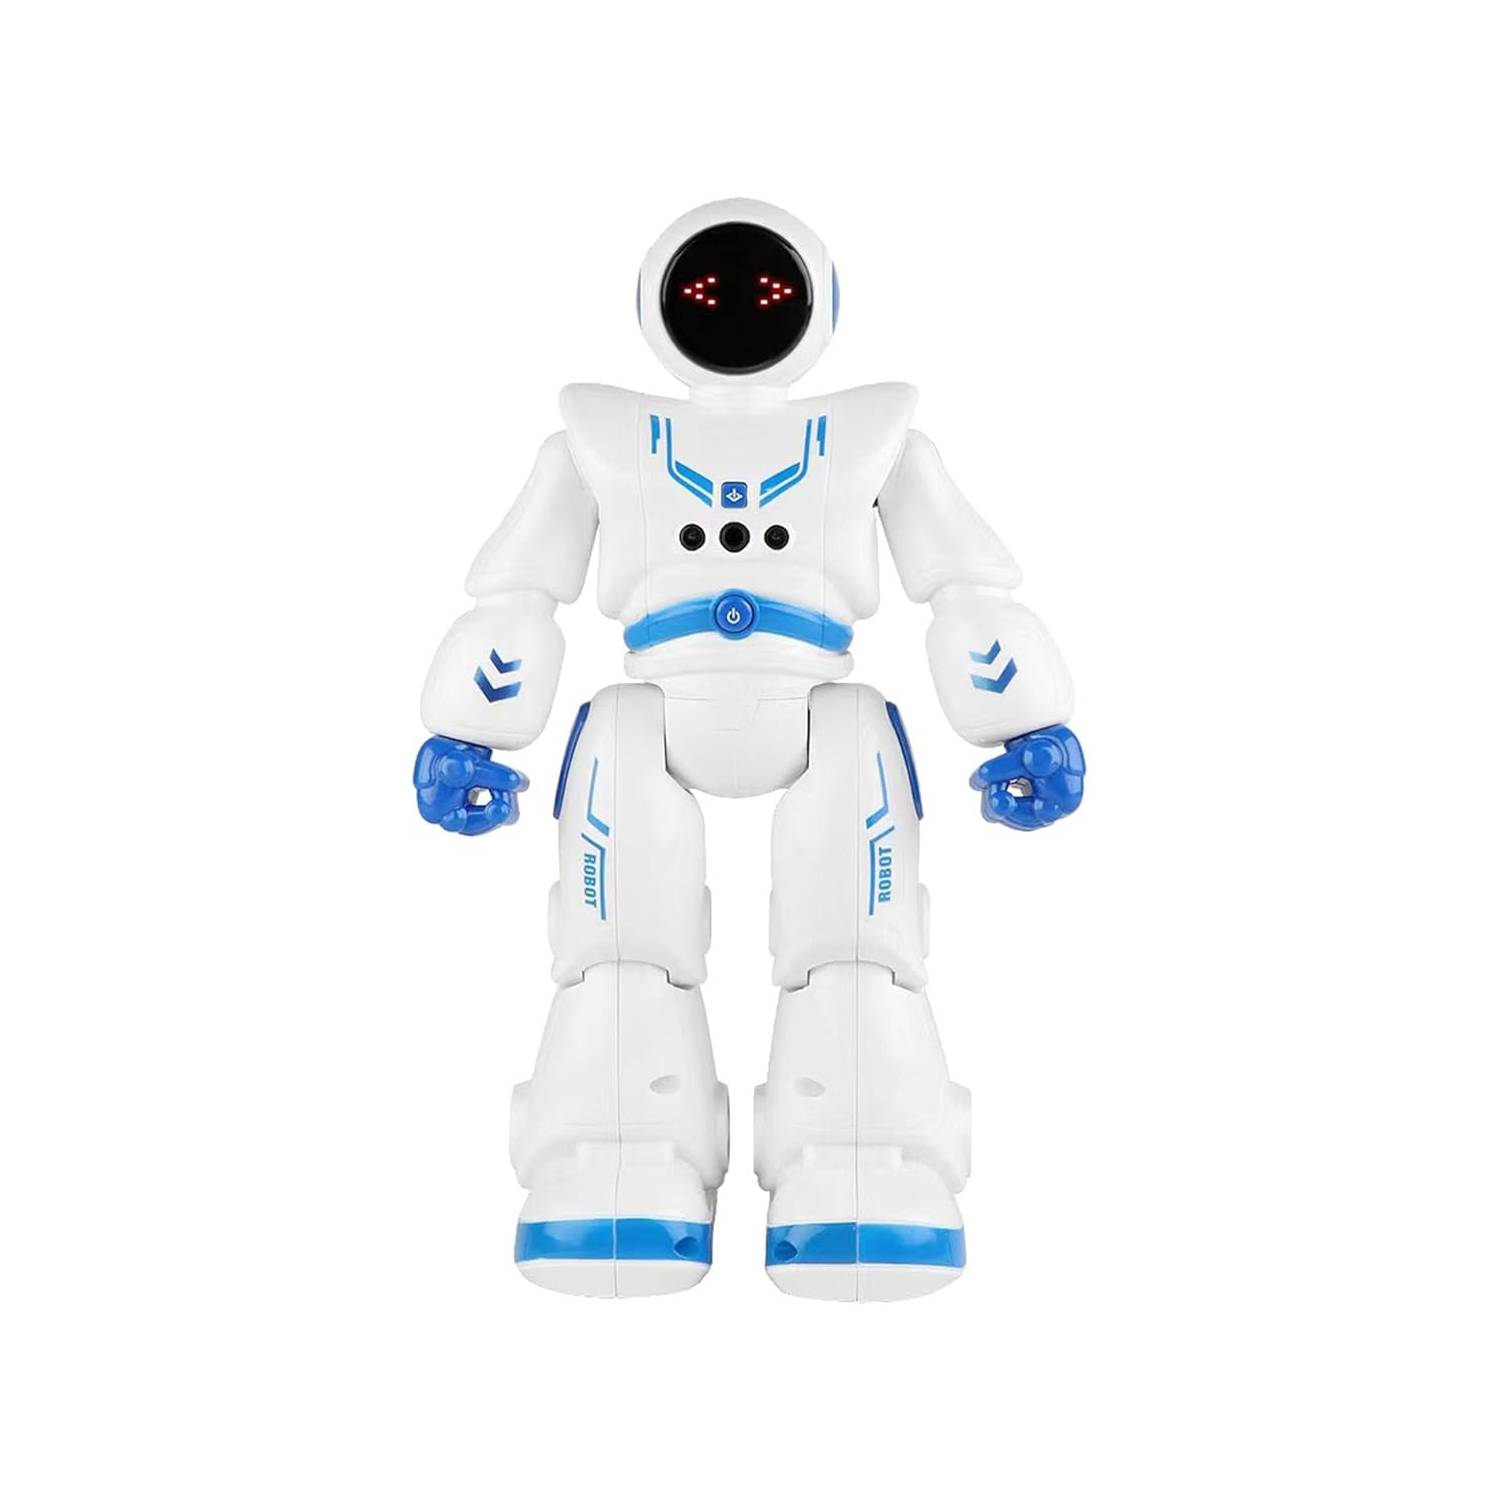 GENERICO Robot Inteligente Para Niños Smart Control Remotogestos